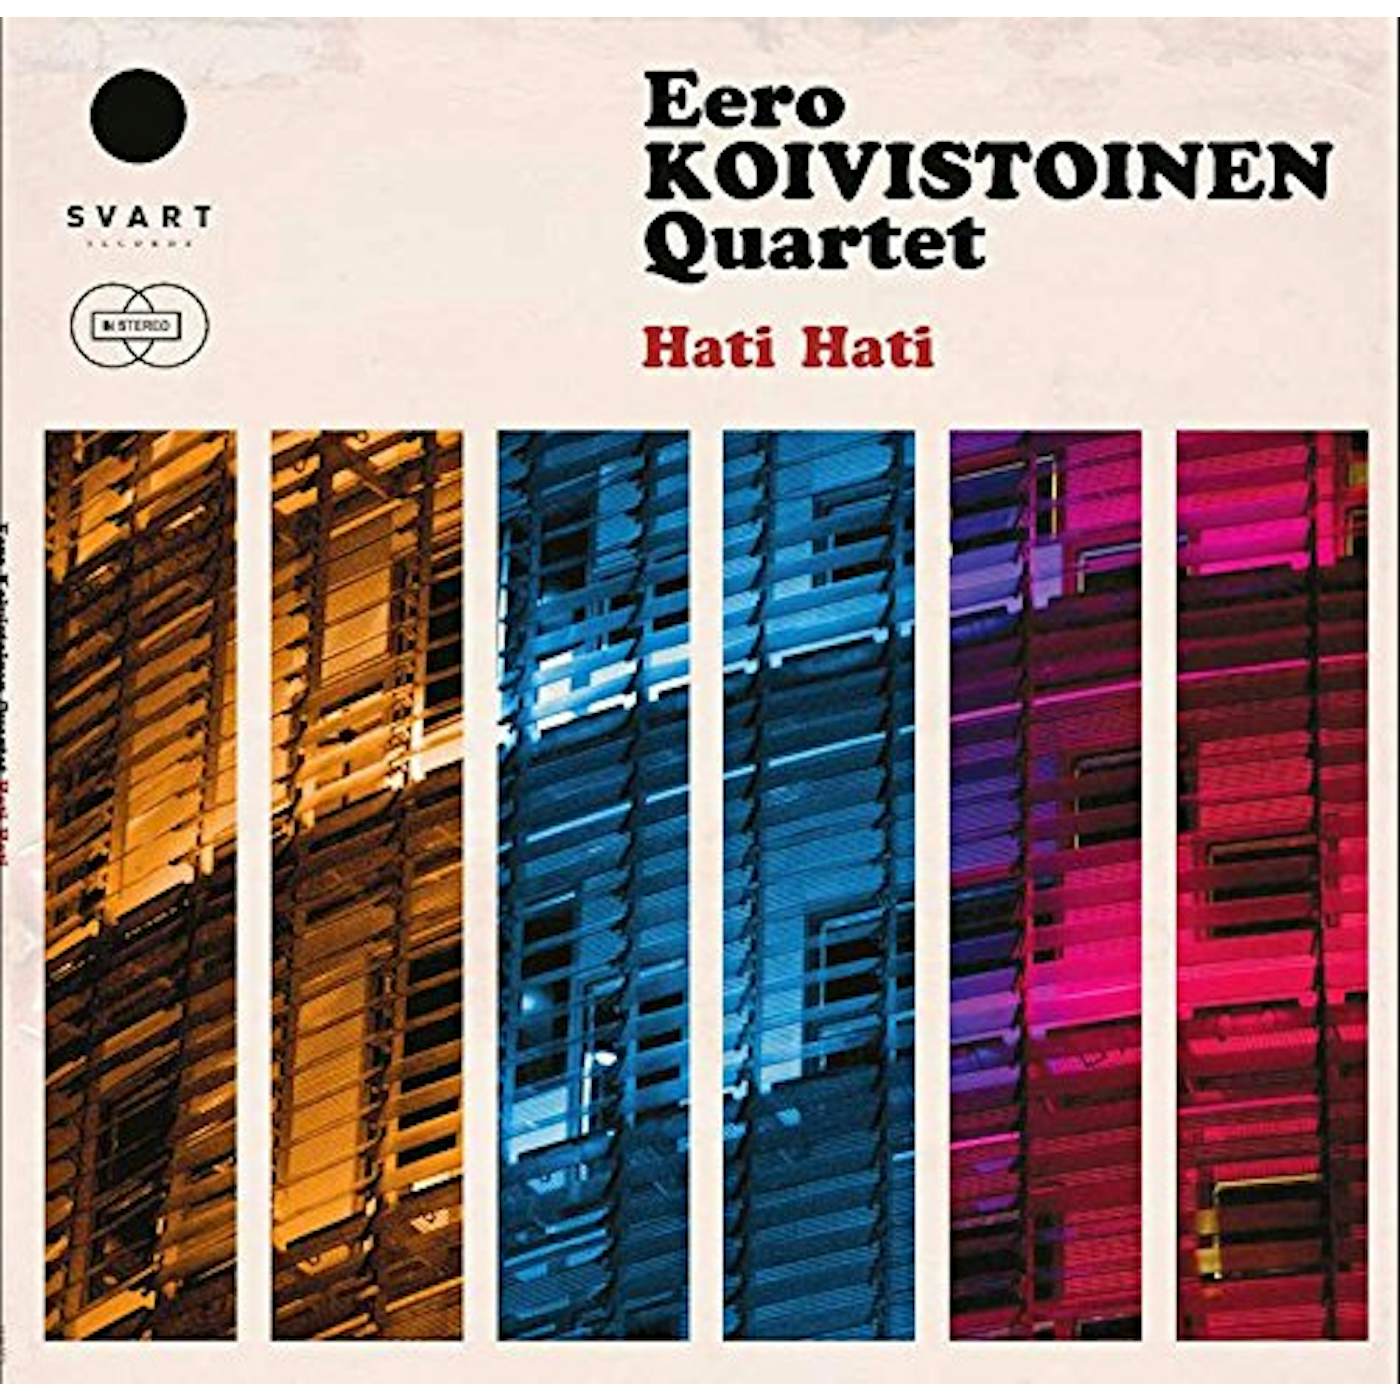 Eero Koivistoinen Hati Hati Vinyl Record